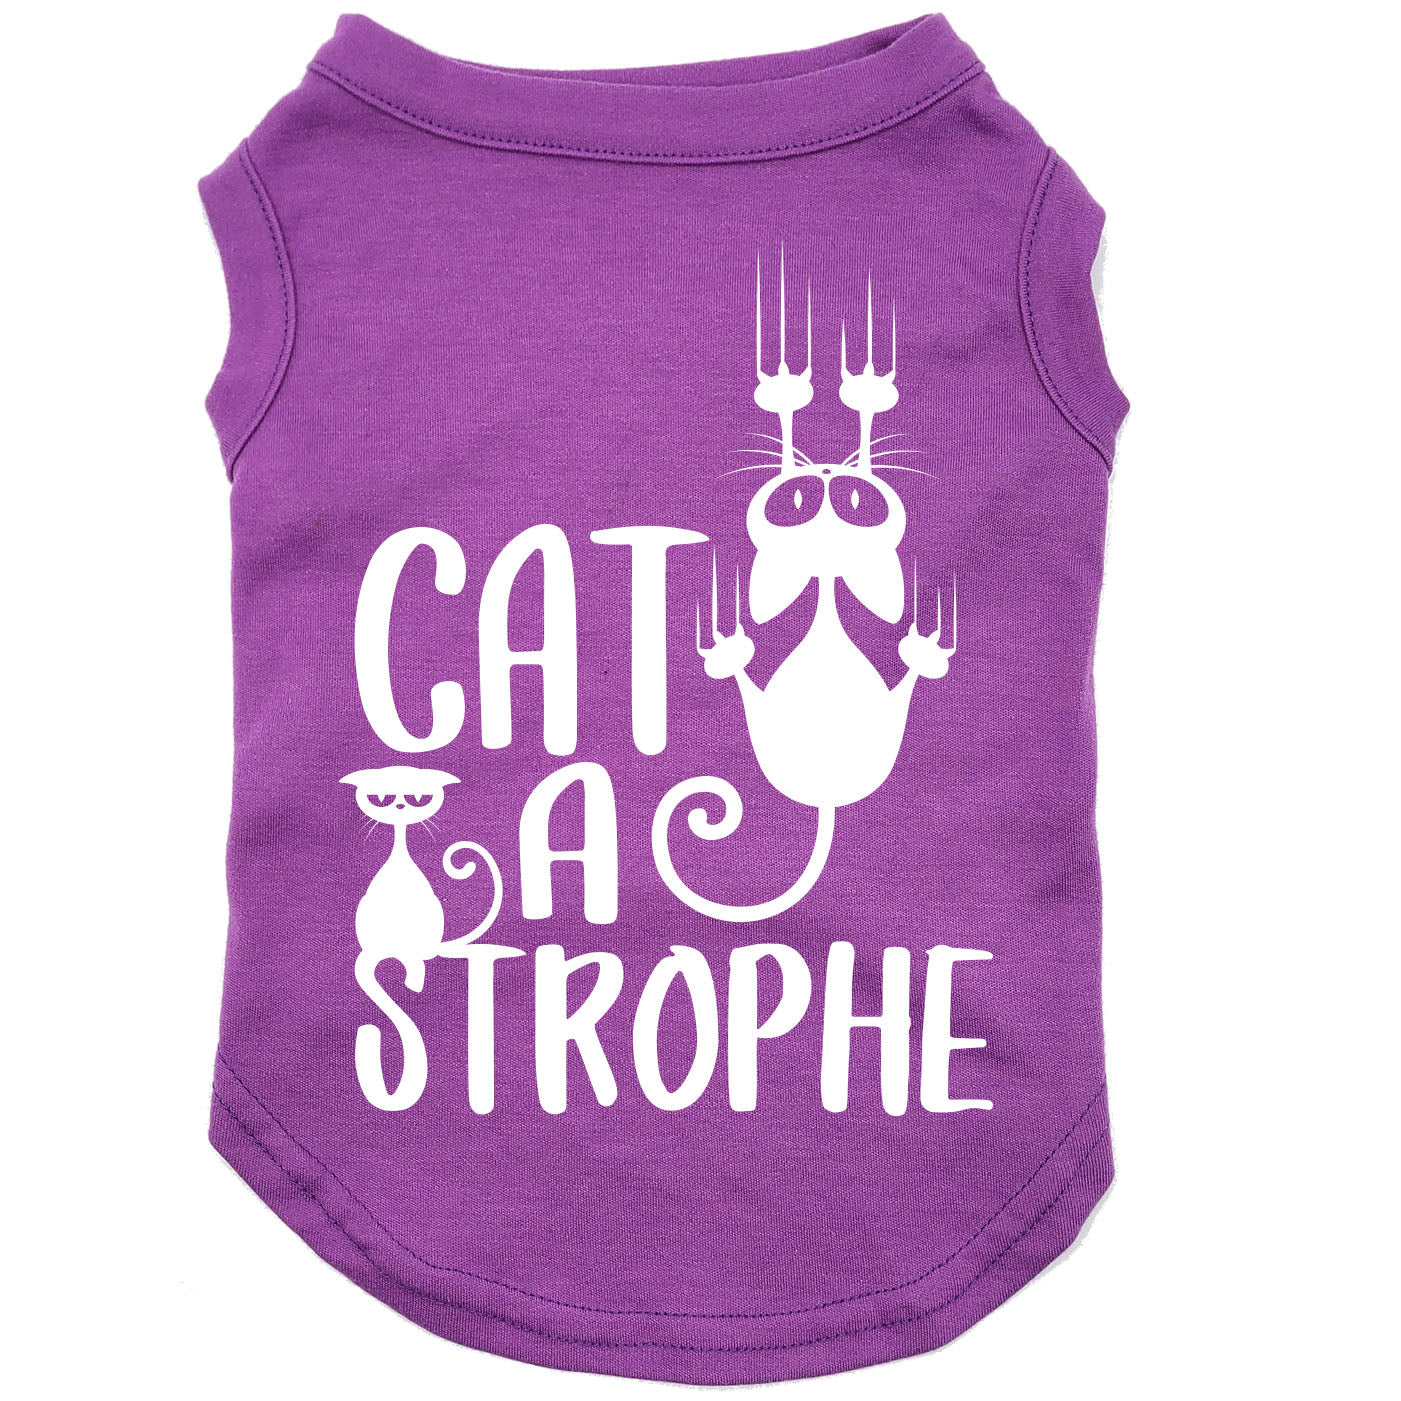 Cat-a-strophe, t-shirt pour chat